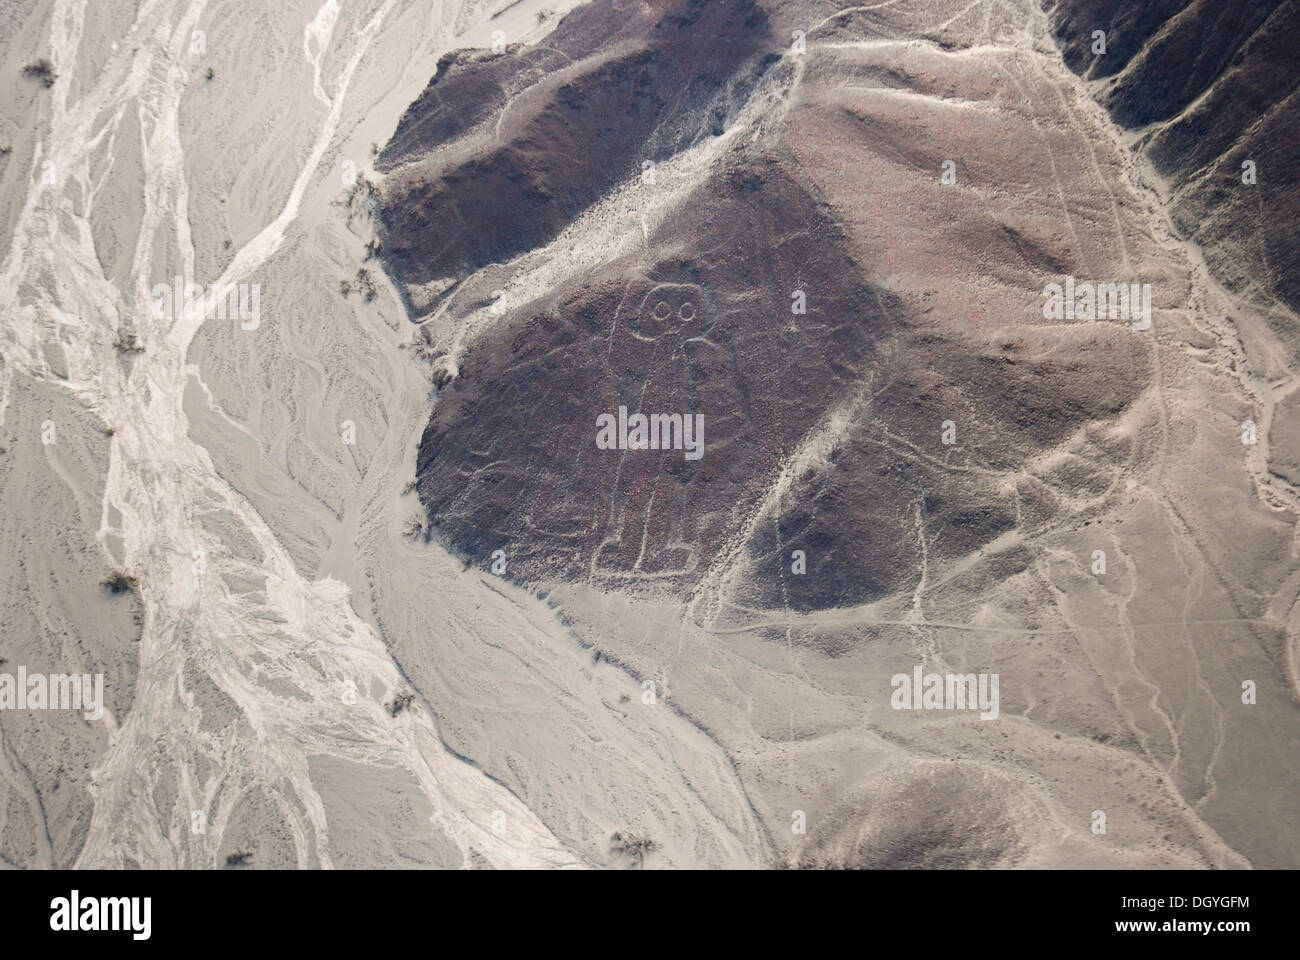 L'astronaute, lignes de Nazca, les géoglyphes de Nasca, UNESCO World Heritage site près de Nasca ou Nazca, Pérou, Amérique du Sud Banque D'Images